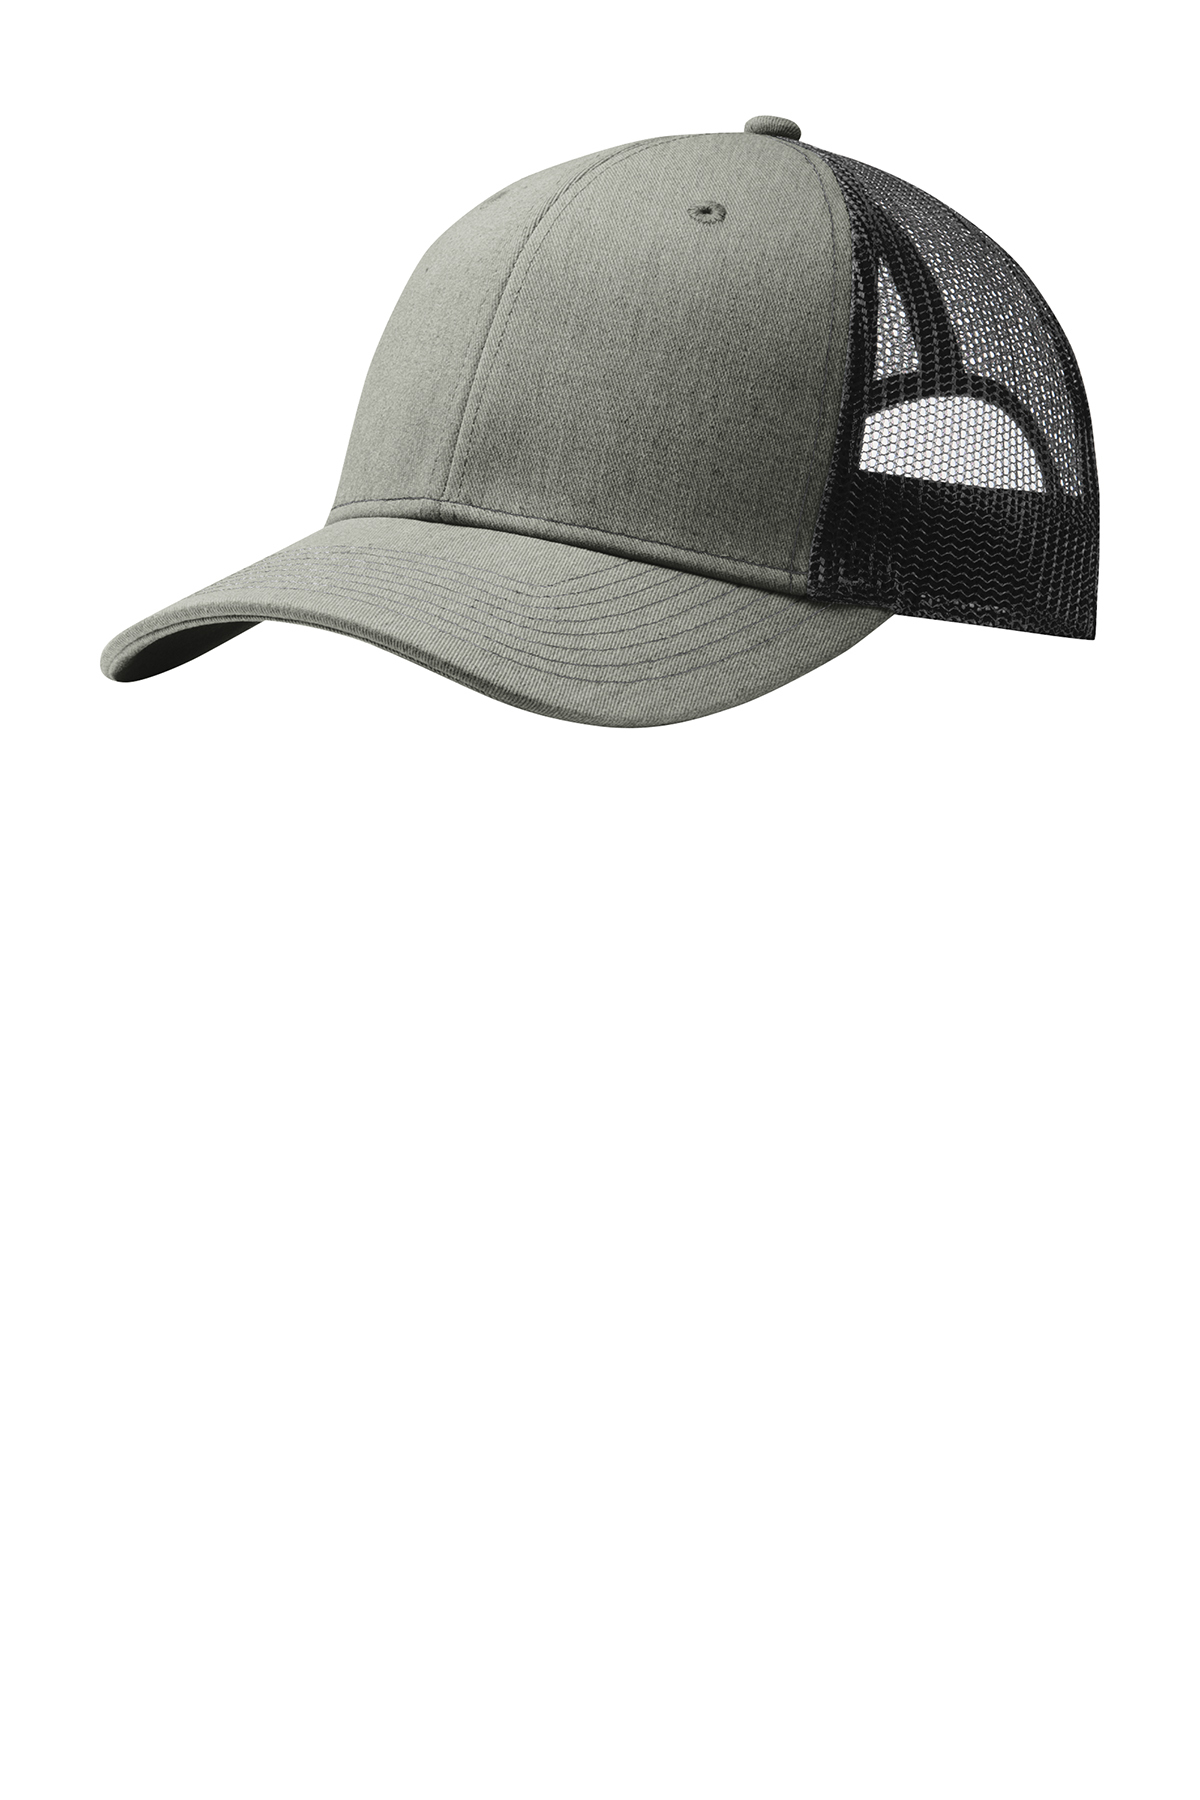 PENN PENN® Black Heather Grey Trucker Hat